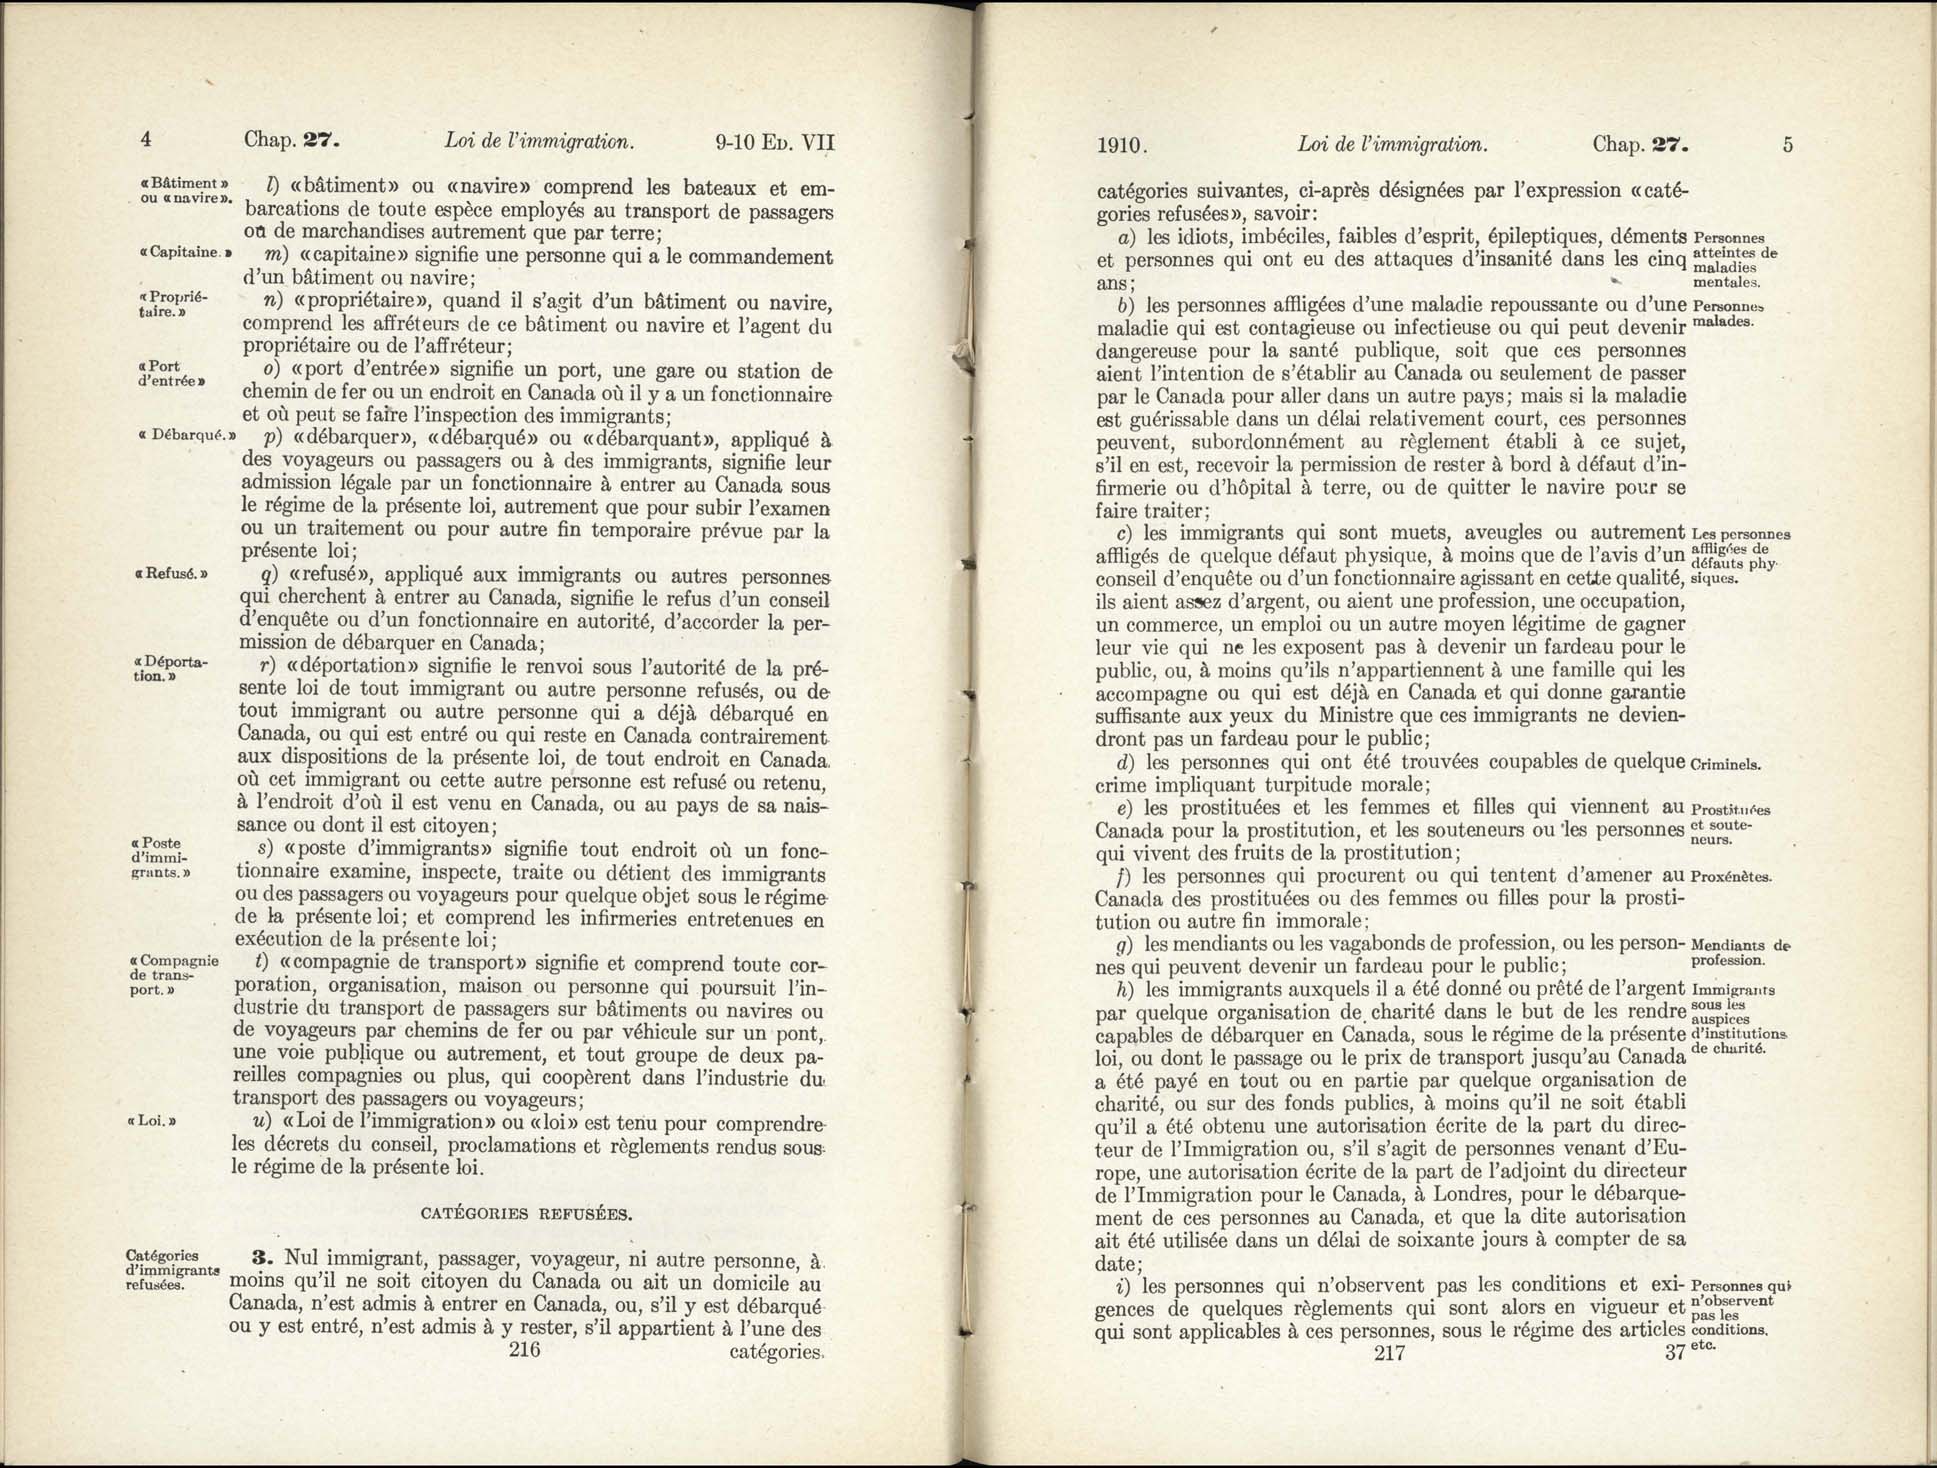 Chap 27 Page 216, 217 L’Acte d’immigration, 1910